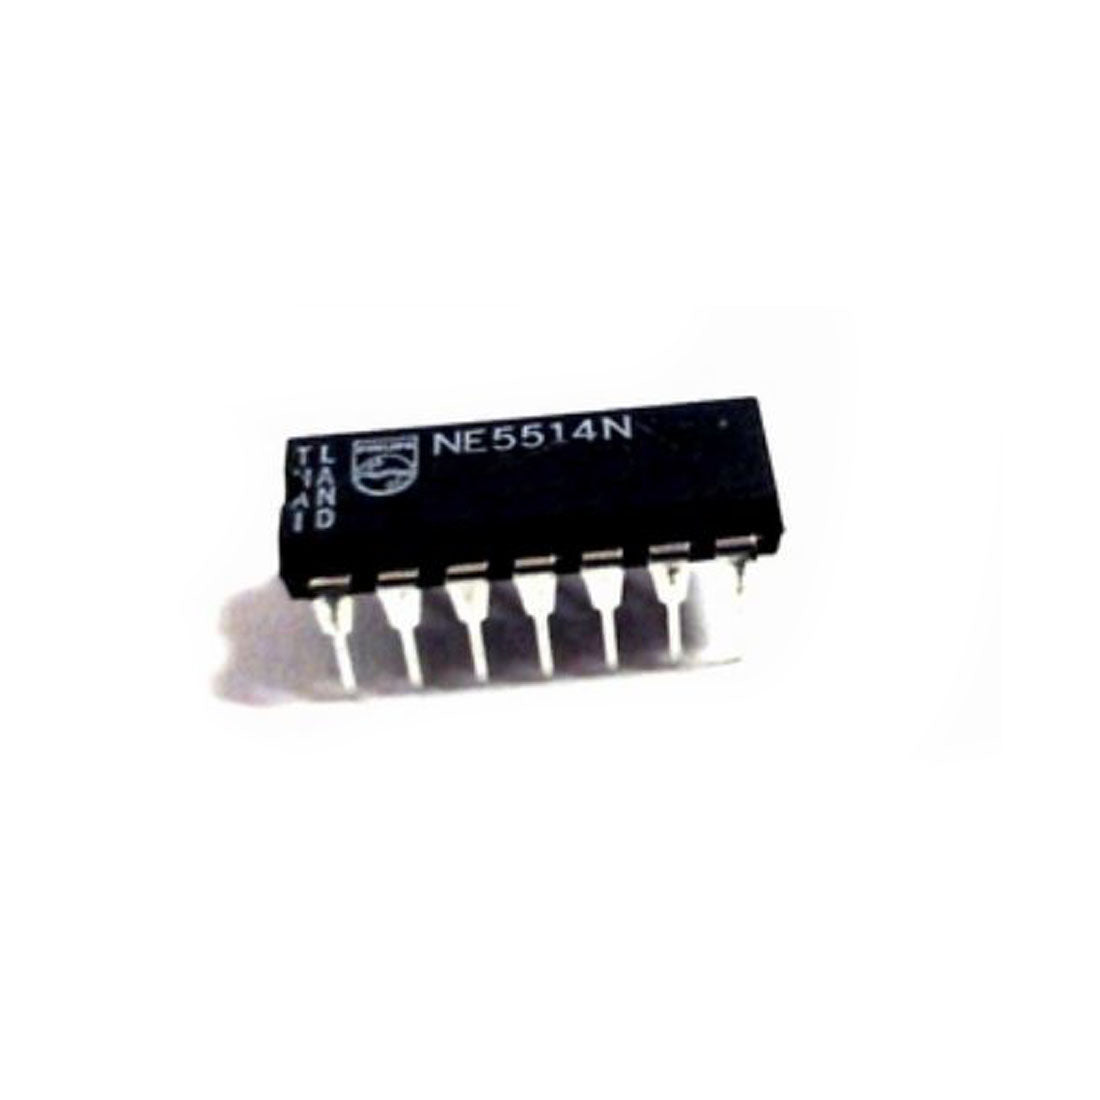 PHILIPS NE5514N componente elettronico, circuito integrato, transistor, 14 contatti